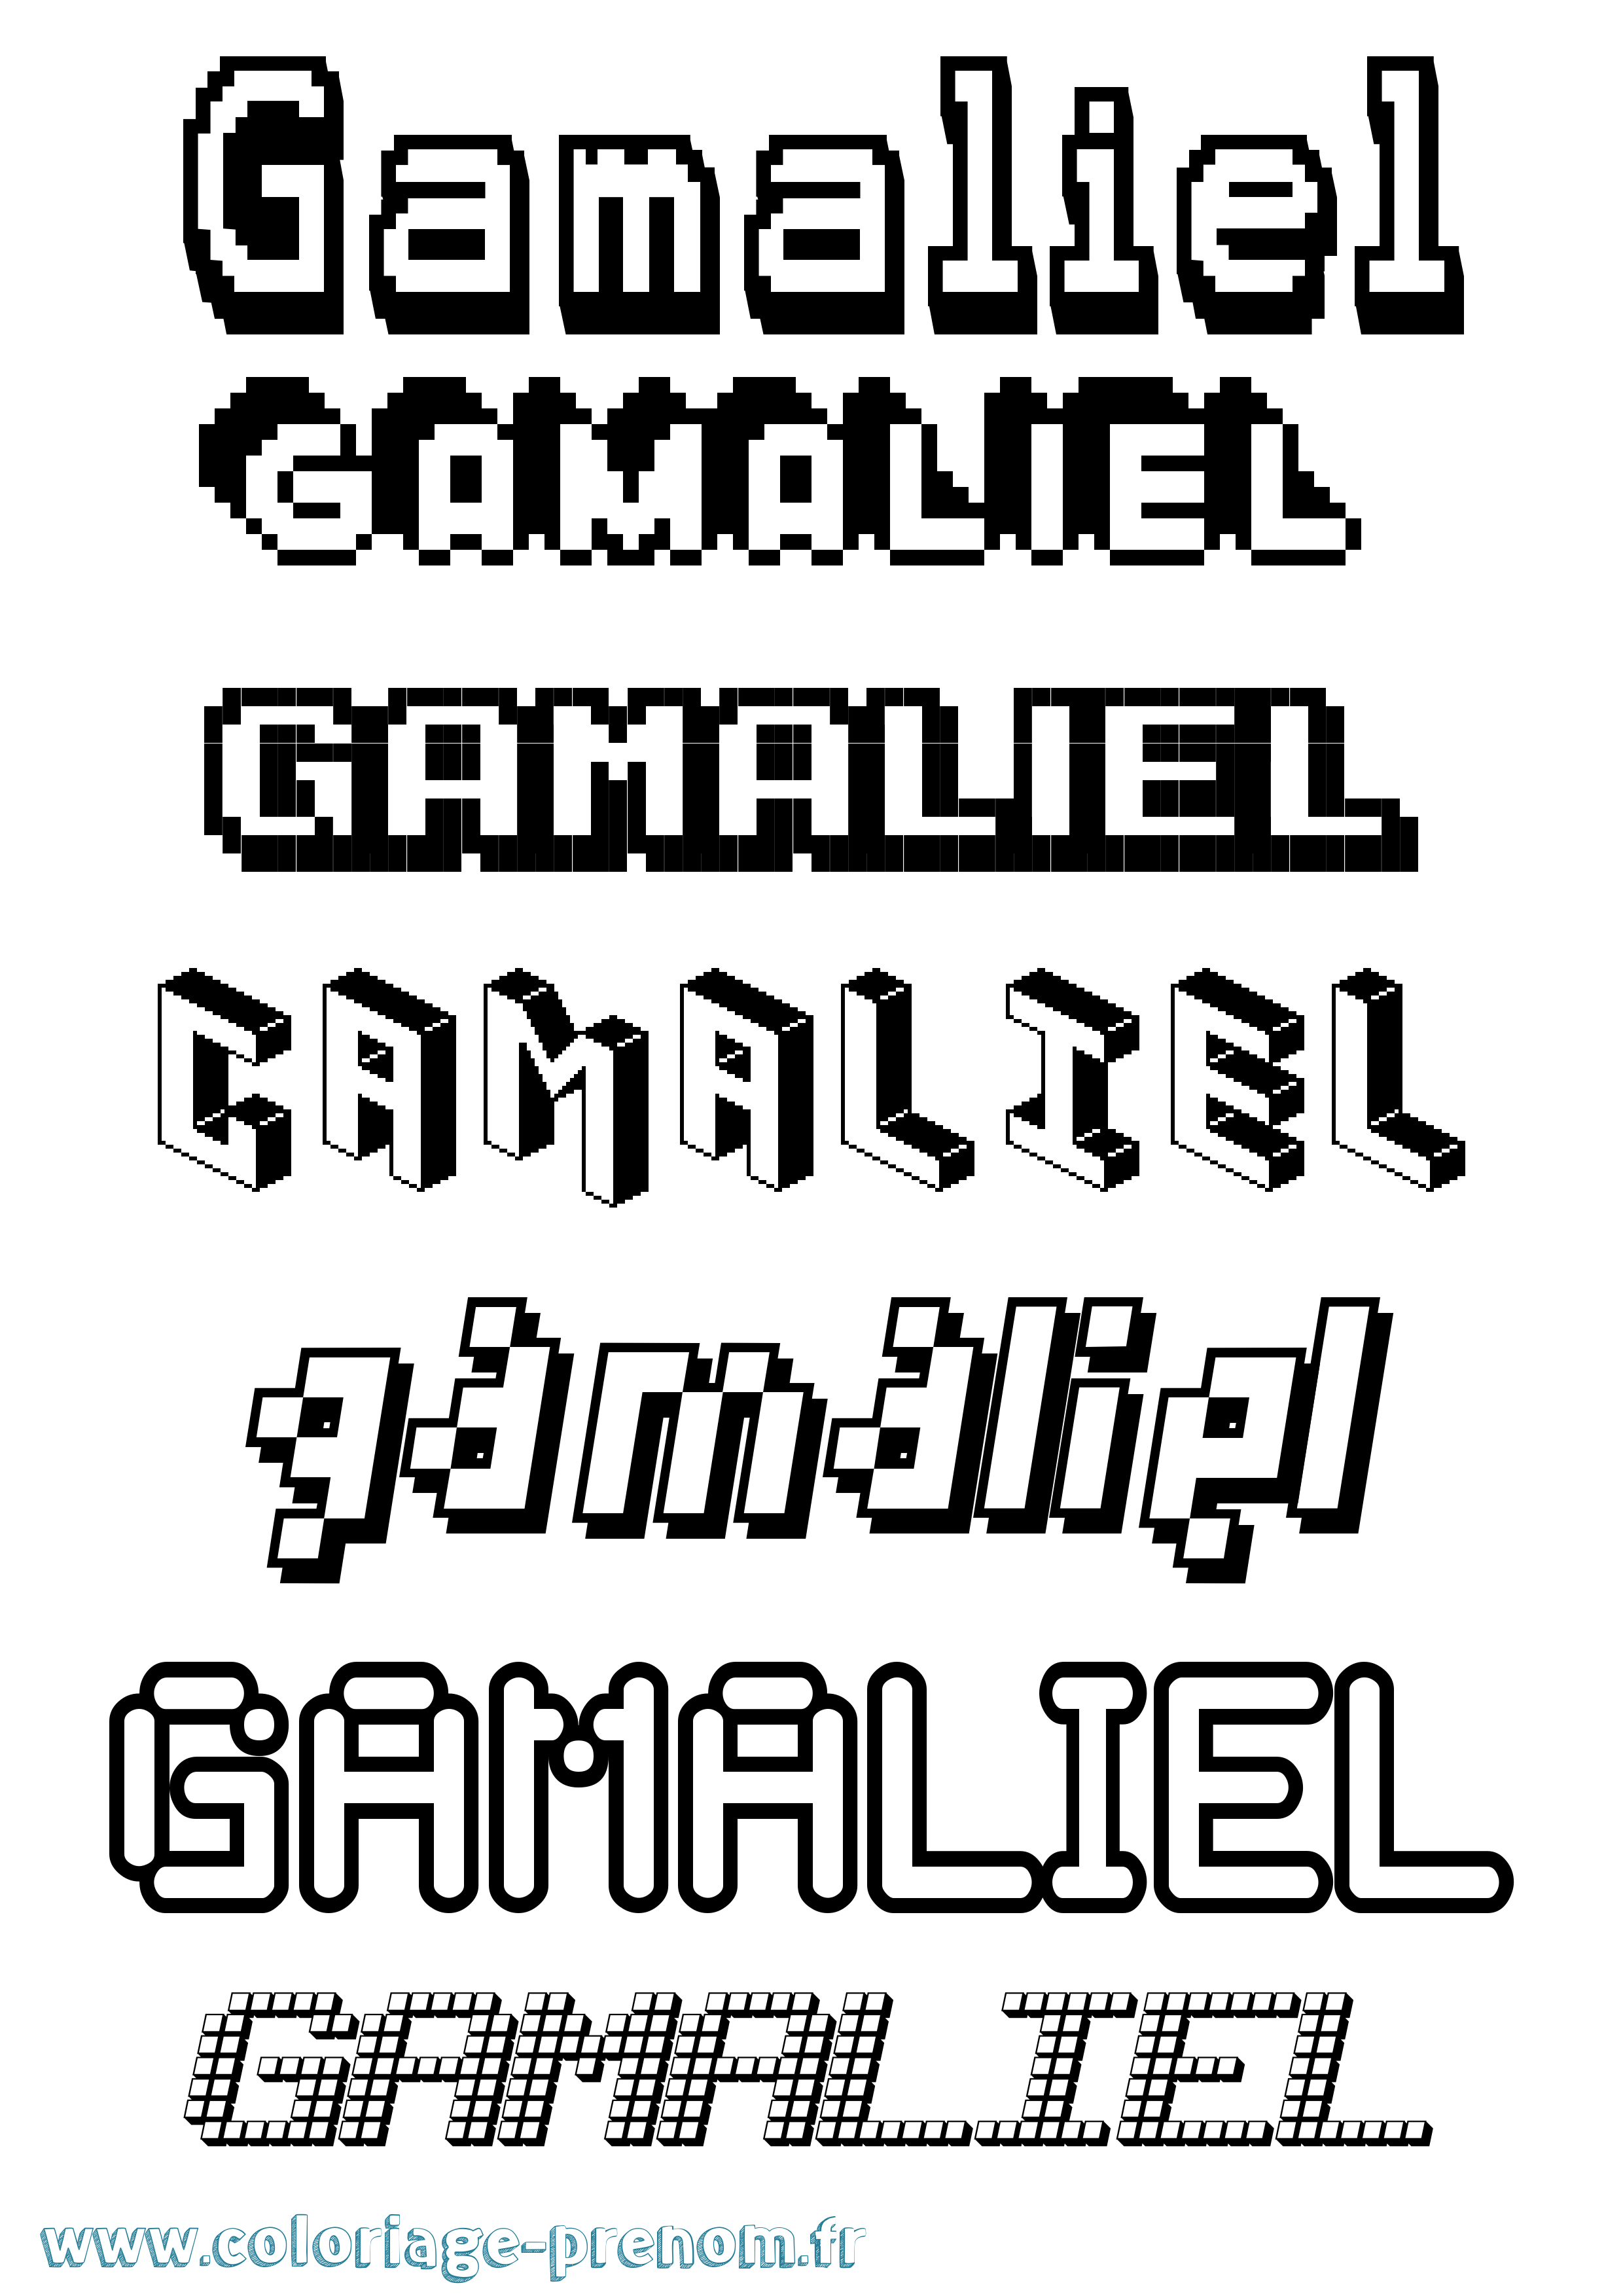 Coloriage prénom Gamaliel Pixel